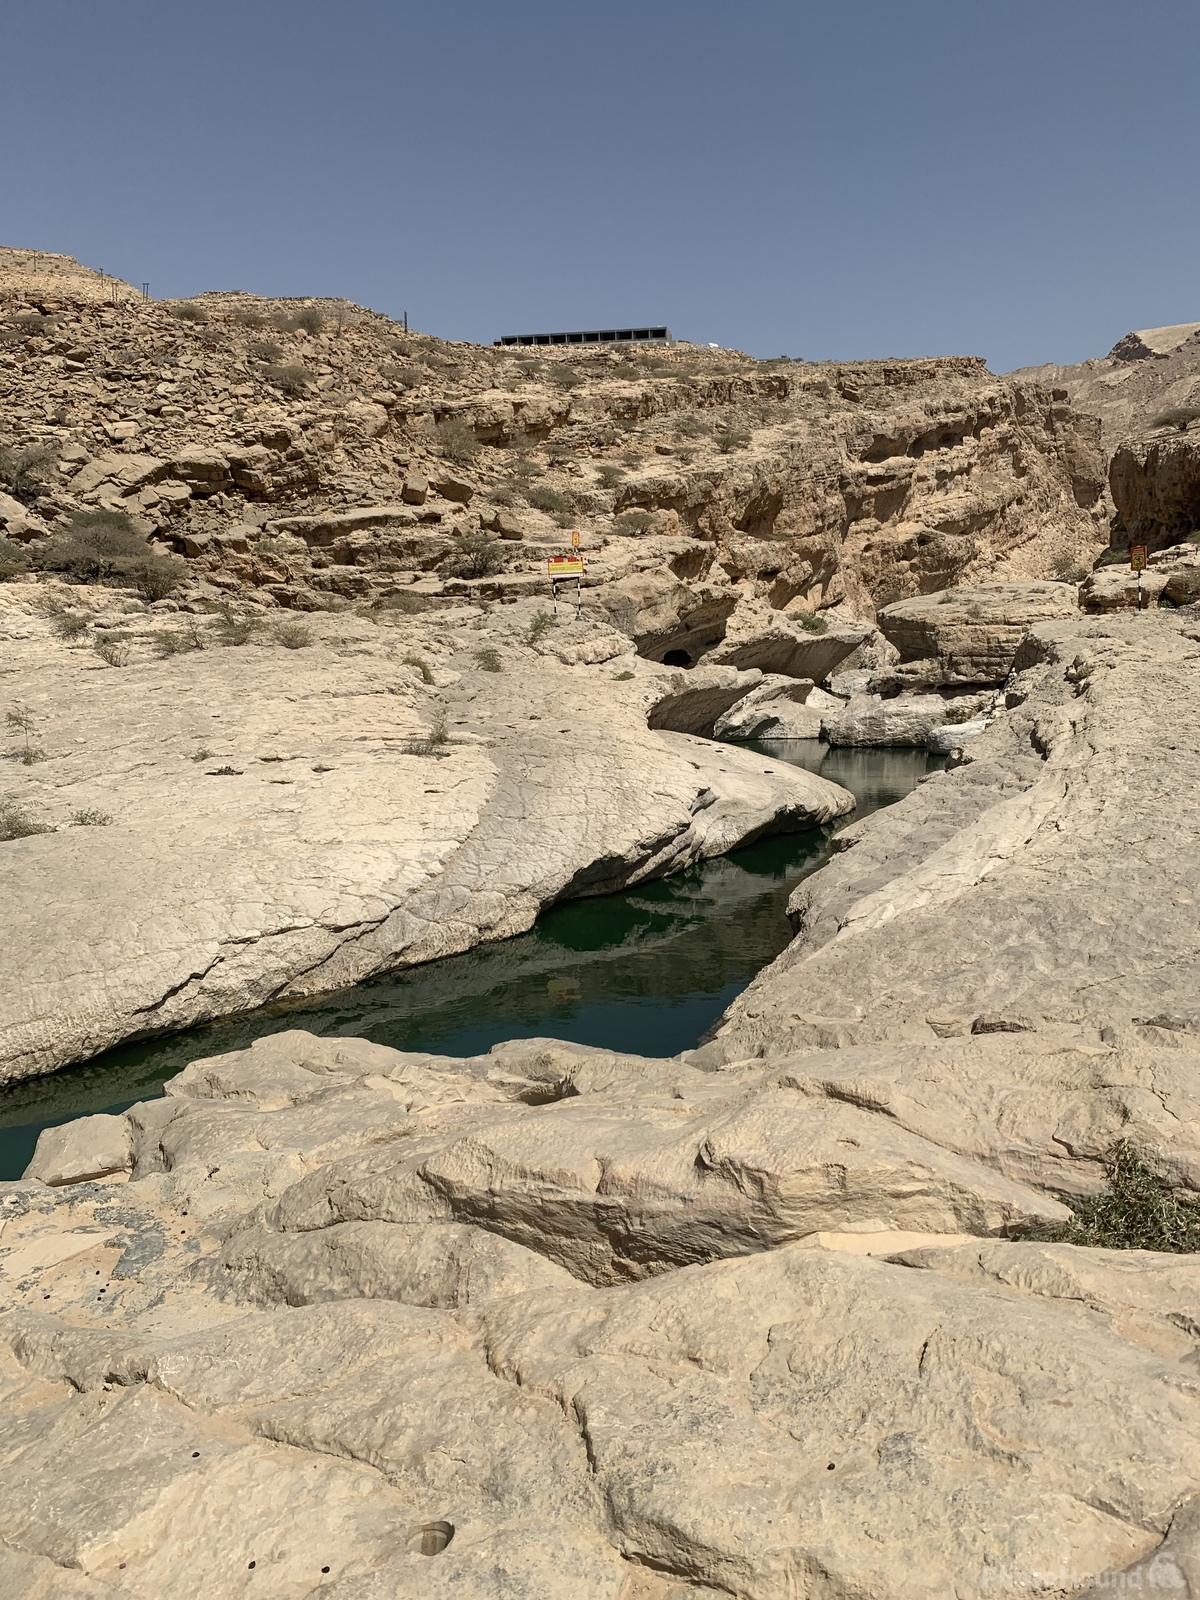 Image of Wadi Bani Khalid by Alexandra Sharrock